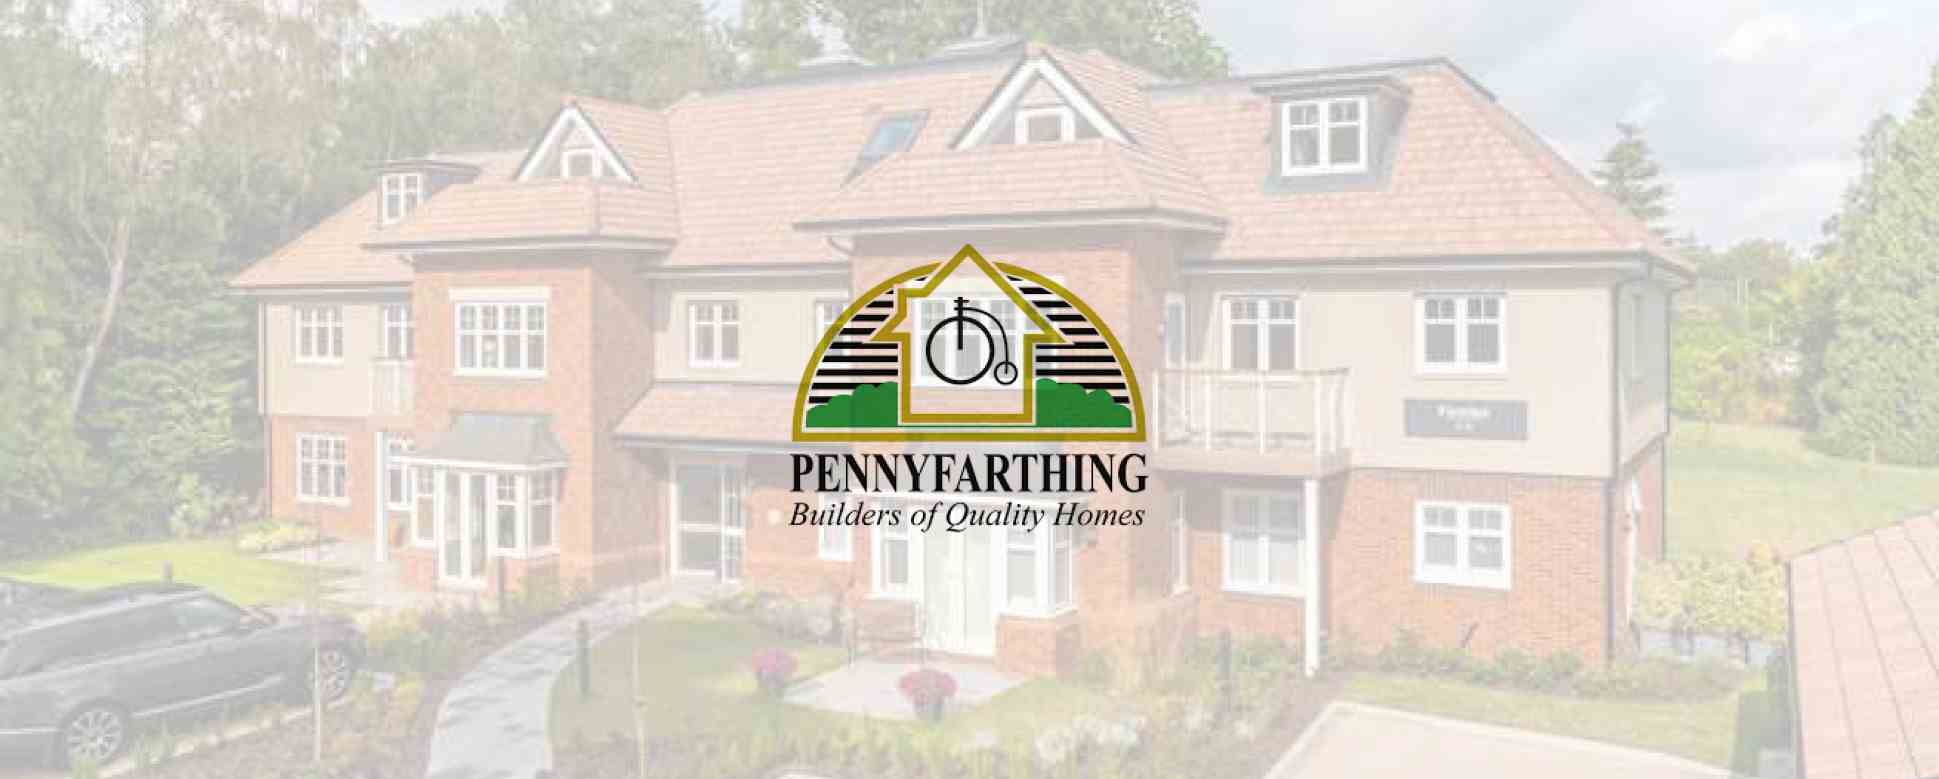 Meet the Developer – Pennyfarthing Homes